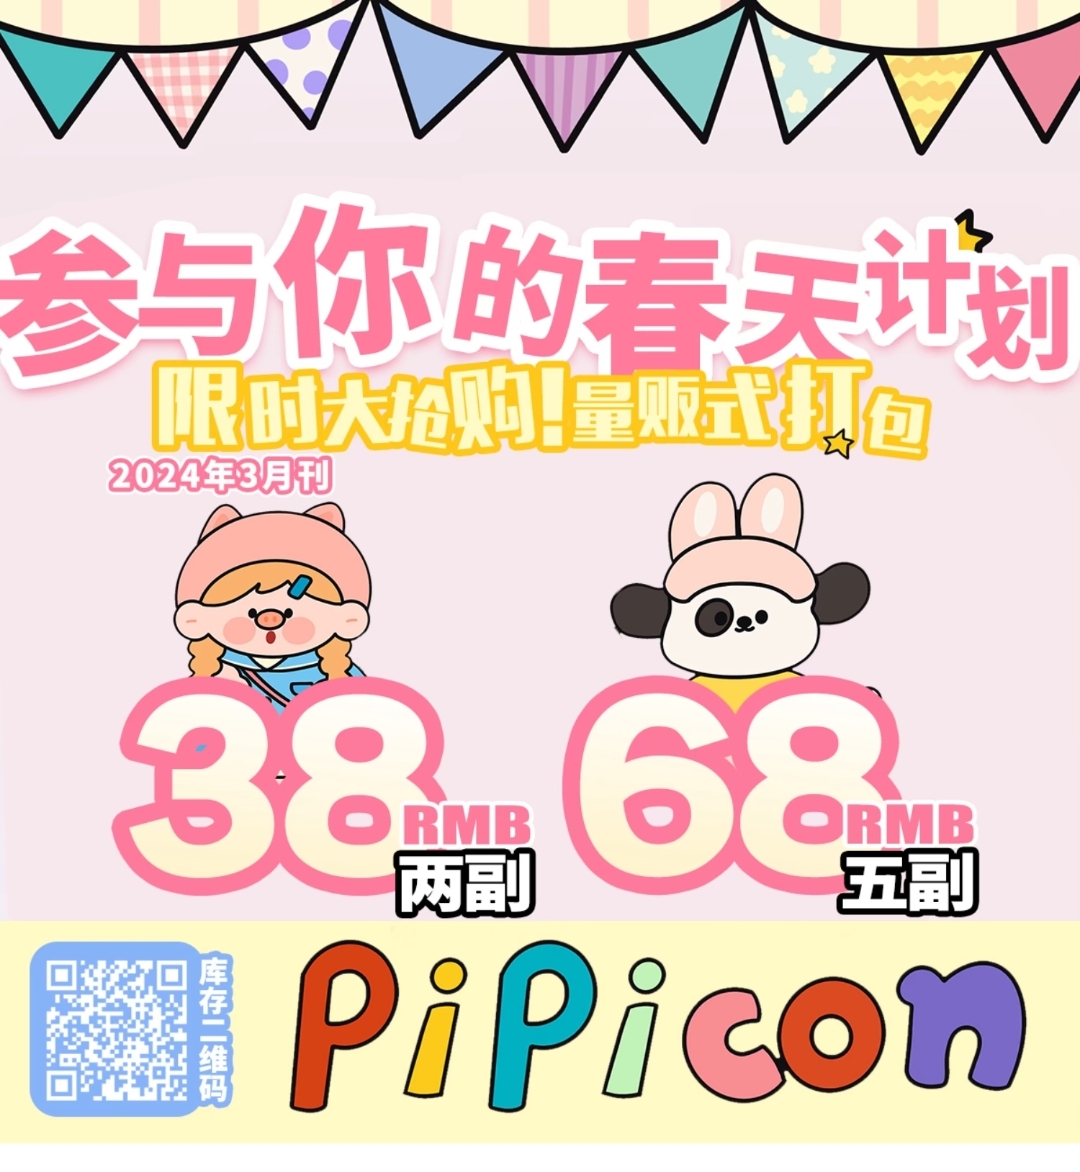 【年抛秒杀】PiPiCON 绝版清仓 限时大抢购 量贩式打包